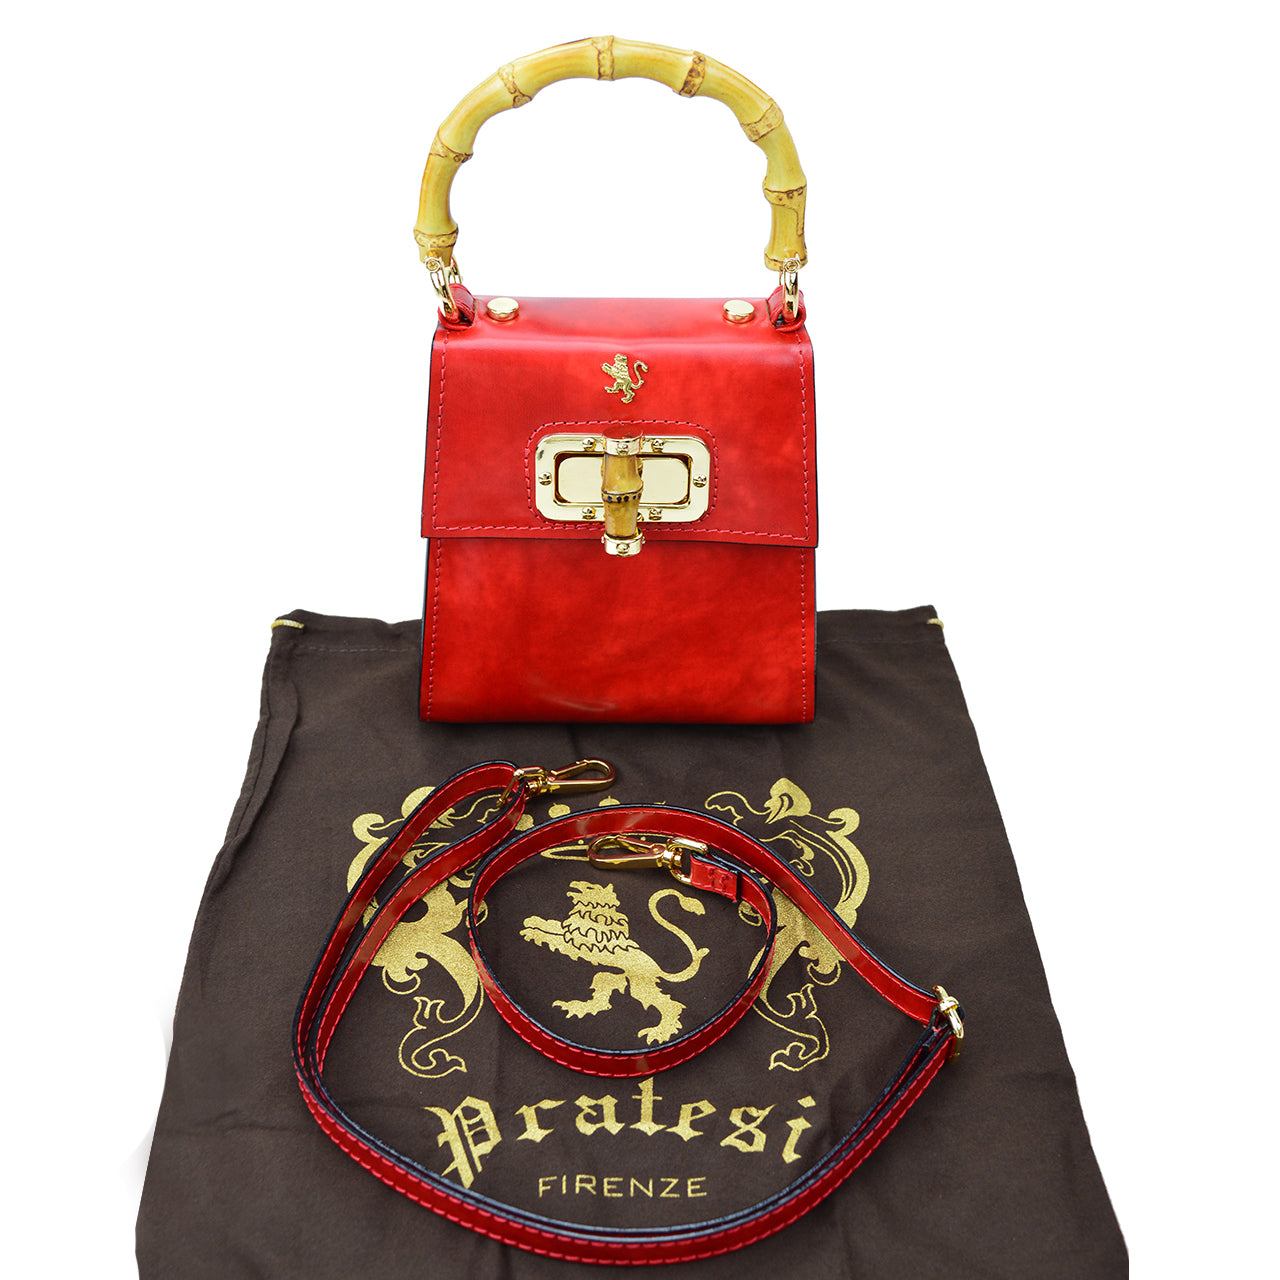 Pratesi Castalia Lady Bag in genuine Italian leather - Brunelleschi Leather Coffee